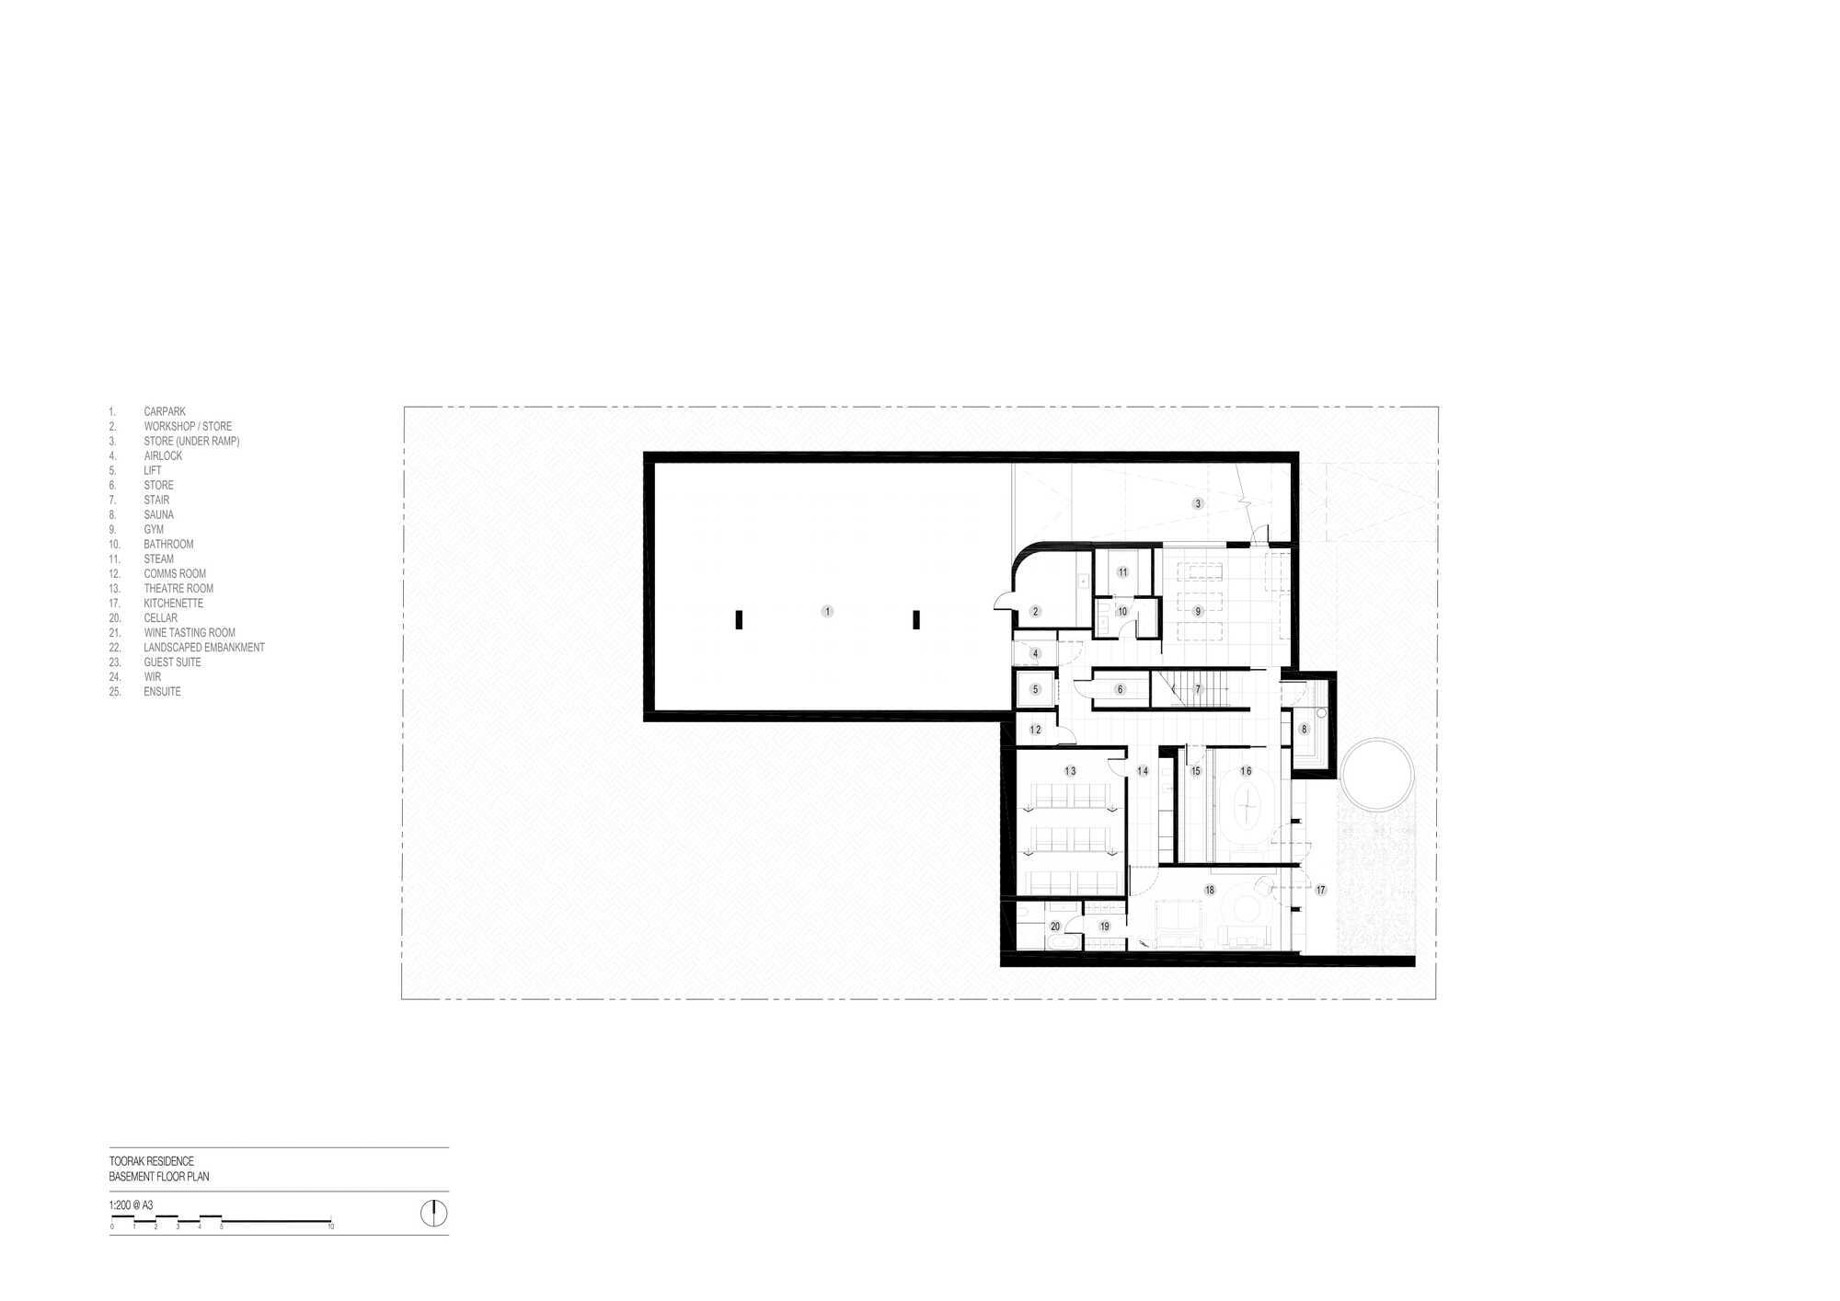 Ottawa Road Modern Residence - Toorak, Melbourne, Australia - Floor Plans